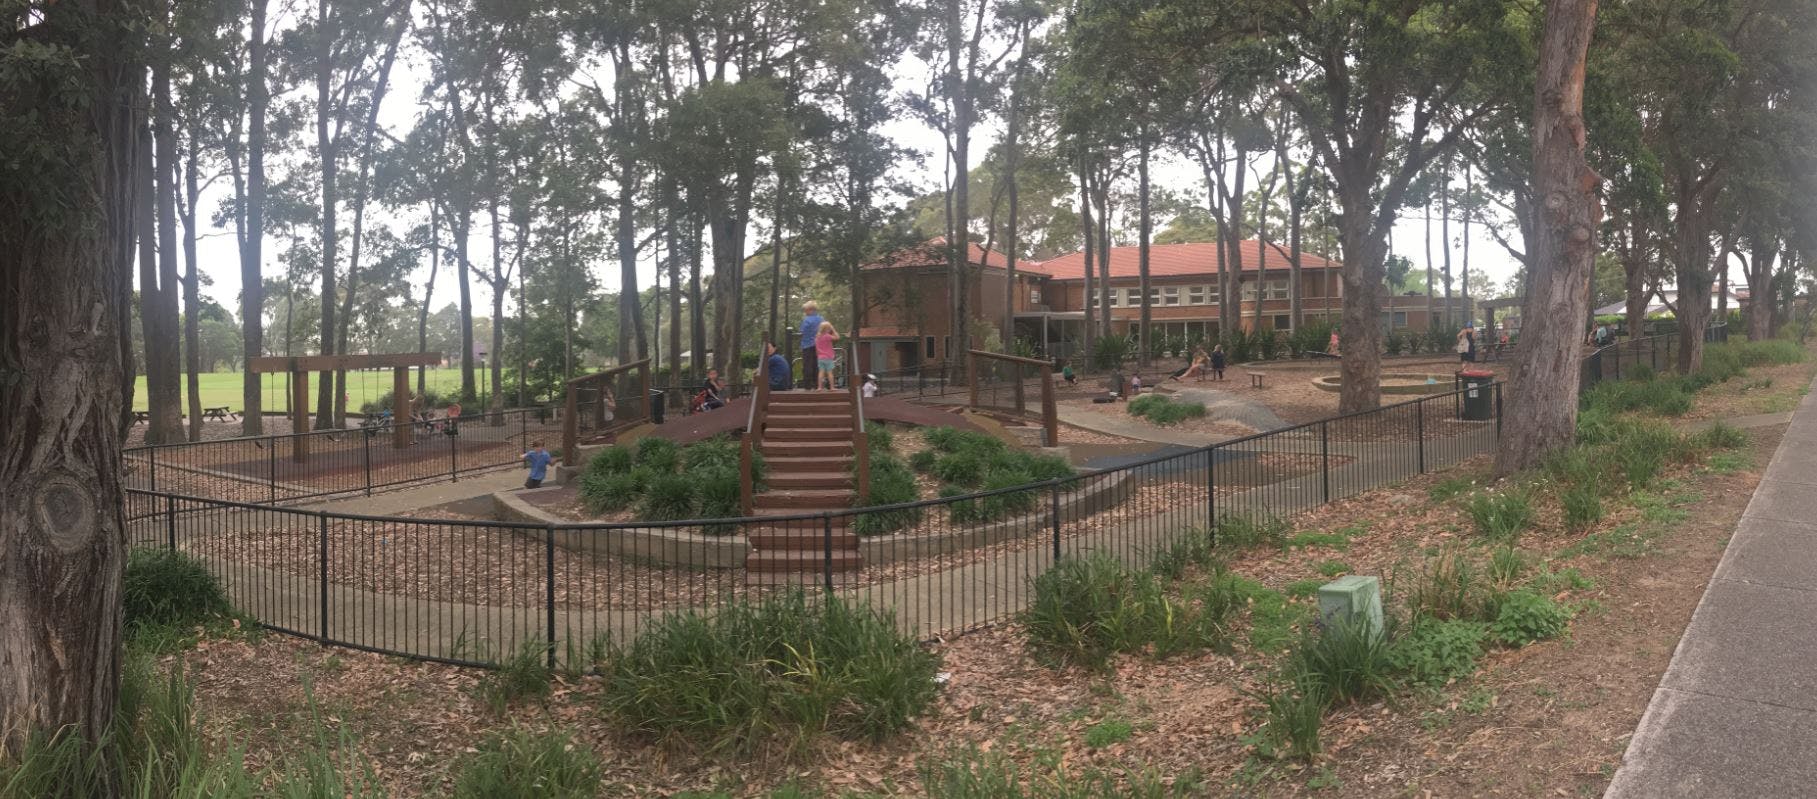 Willoughby Park Playground panoramic shot